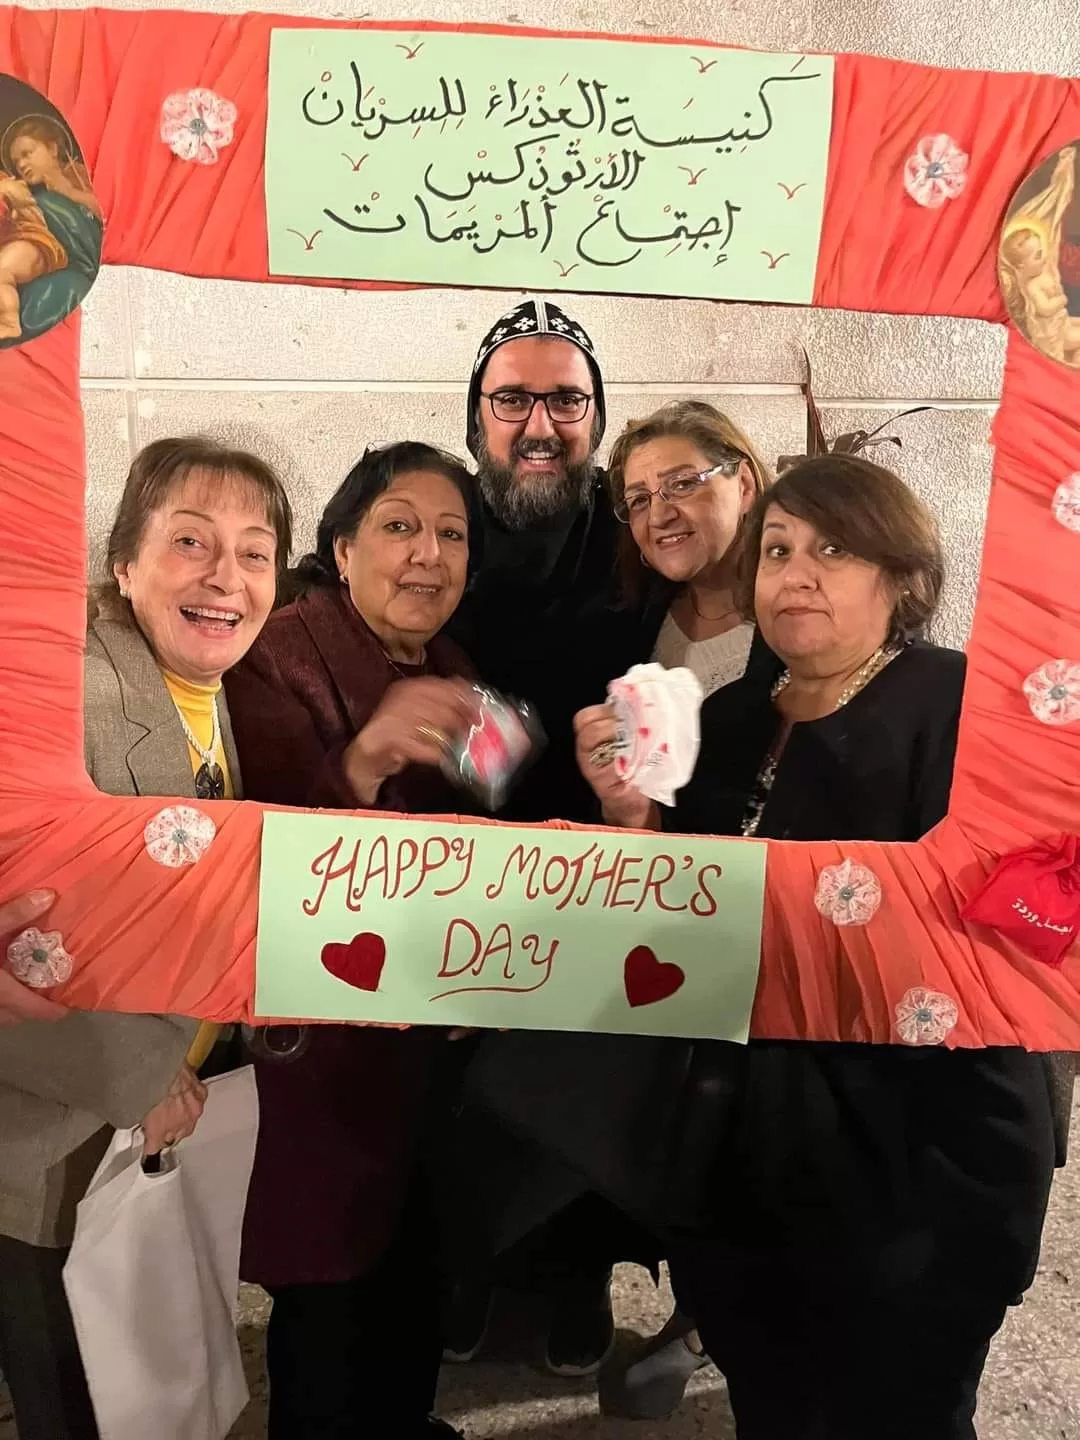 ربان الكنيسة السريانية الأرثوذكسية في مصر يحتفل بعيد الأم مع أبناء الرعية